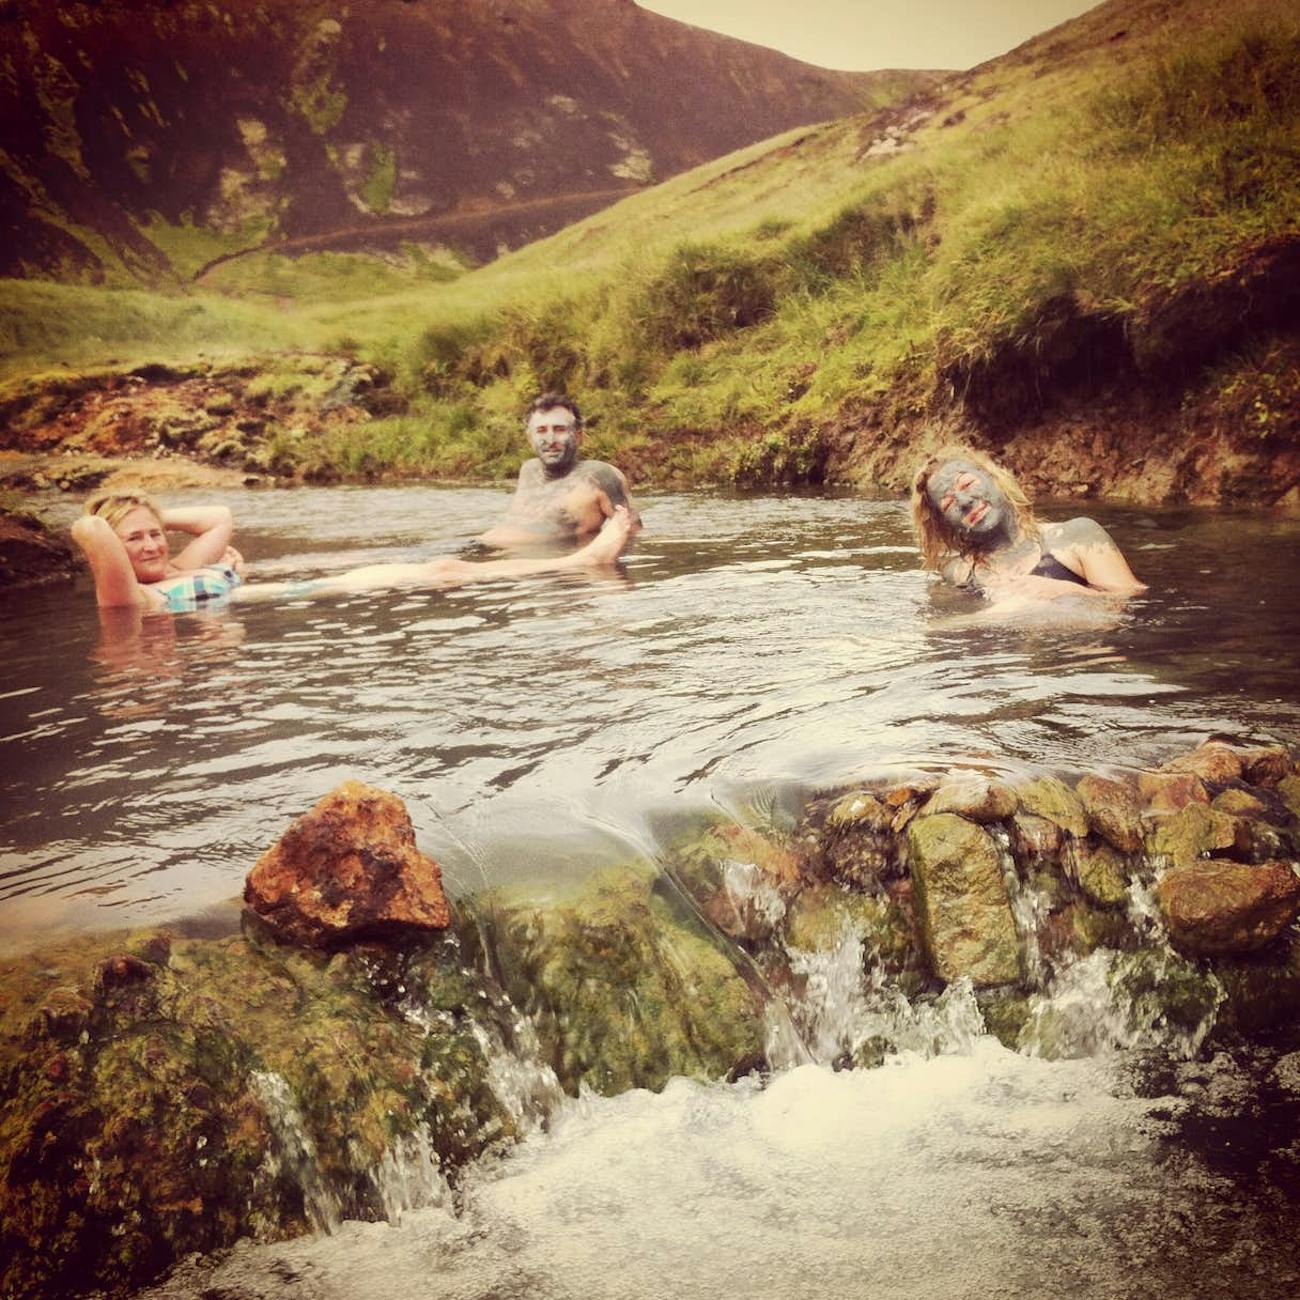 de hot spring valley van Reykjadalur ligt in de buurt van het Frost and Fire Hotel.